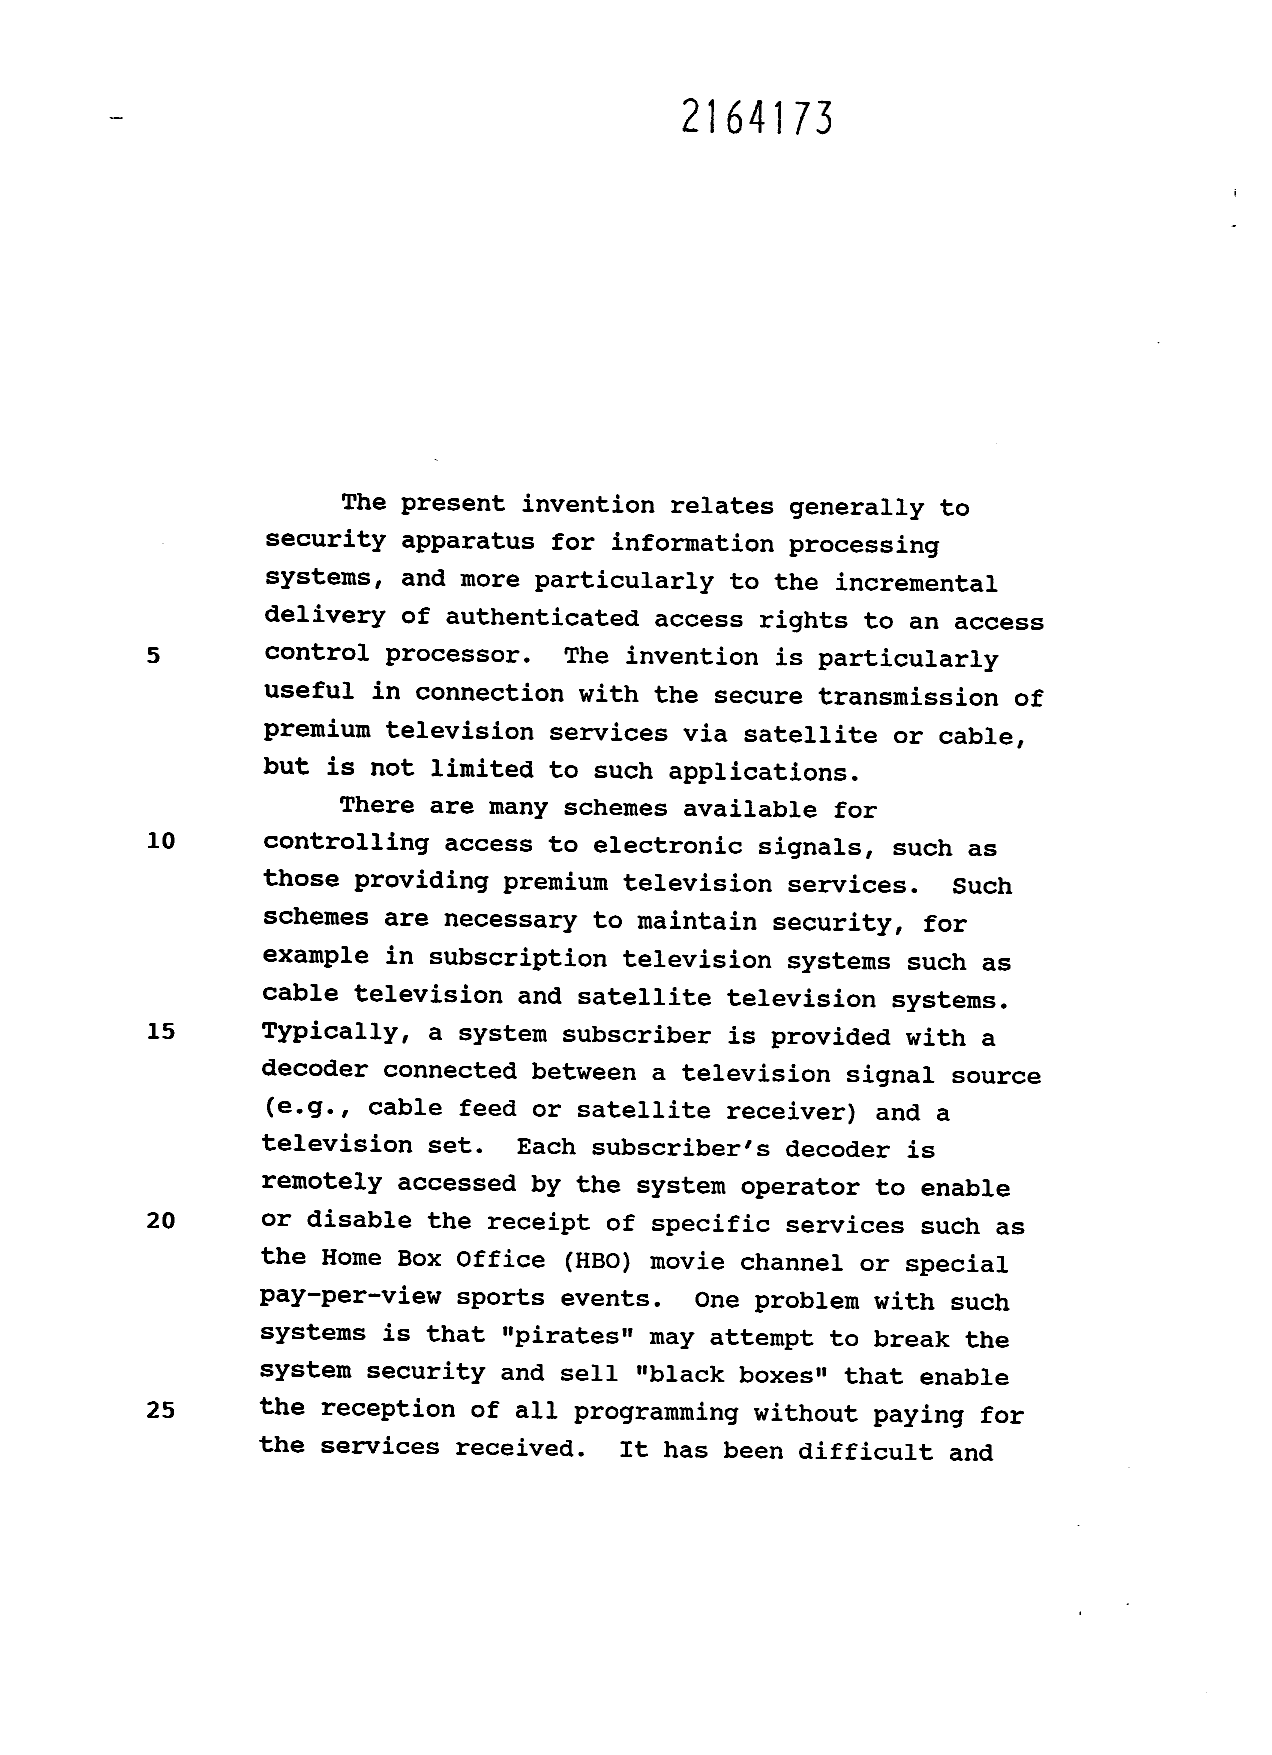 Canadian Patent Document 2164173. Description 19960424. Image 1 of 27